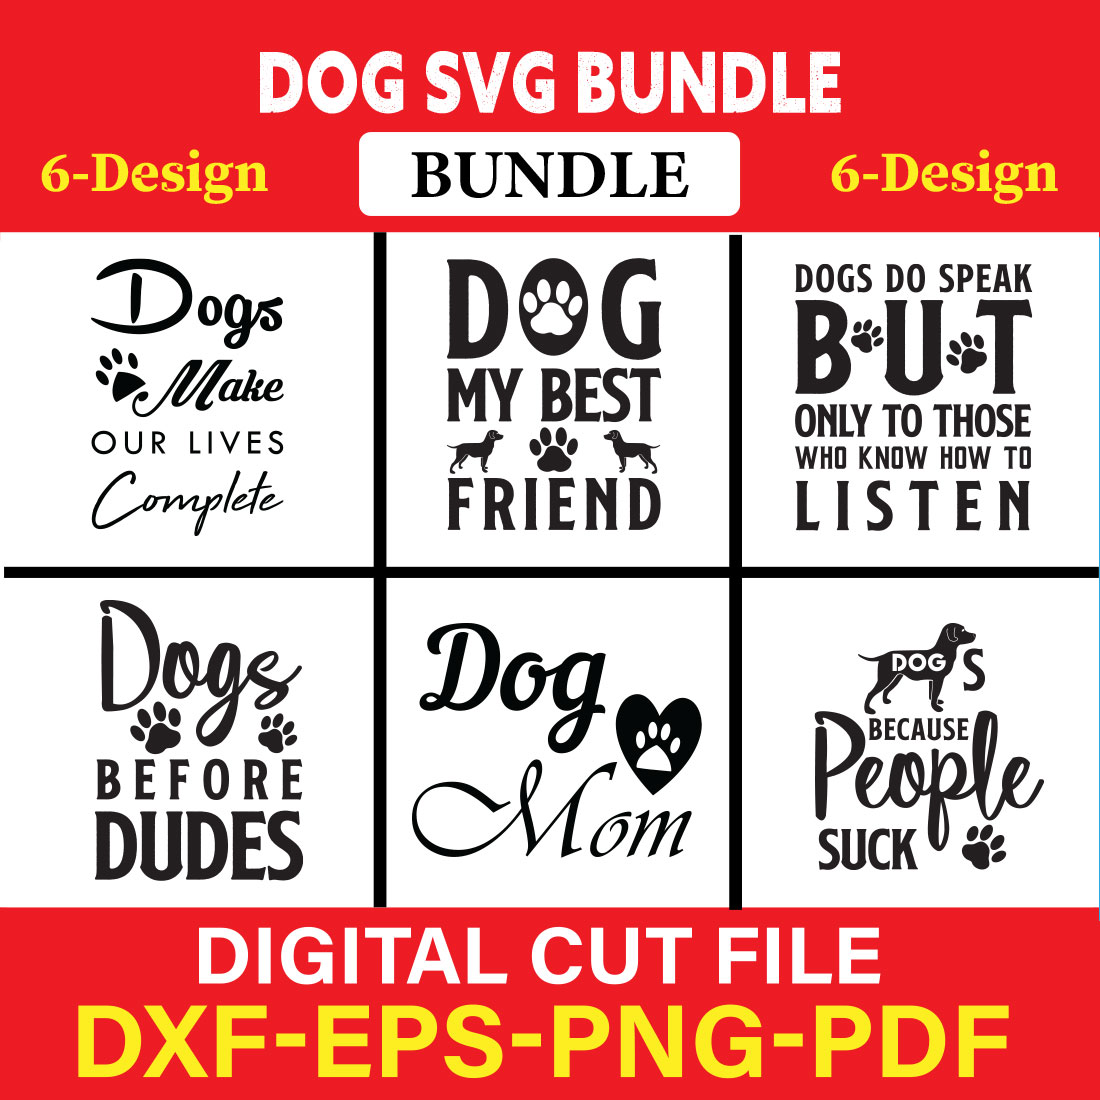 Dog T-shirt Design Bundle Vol-17 cover image.